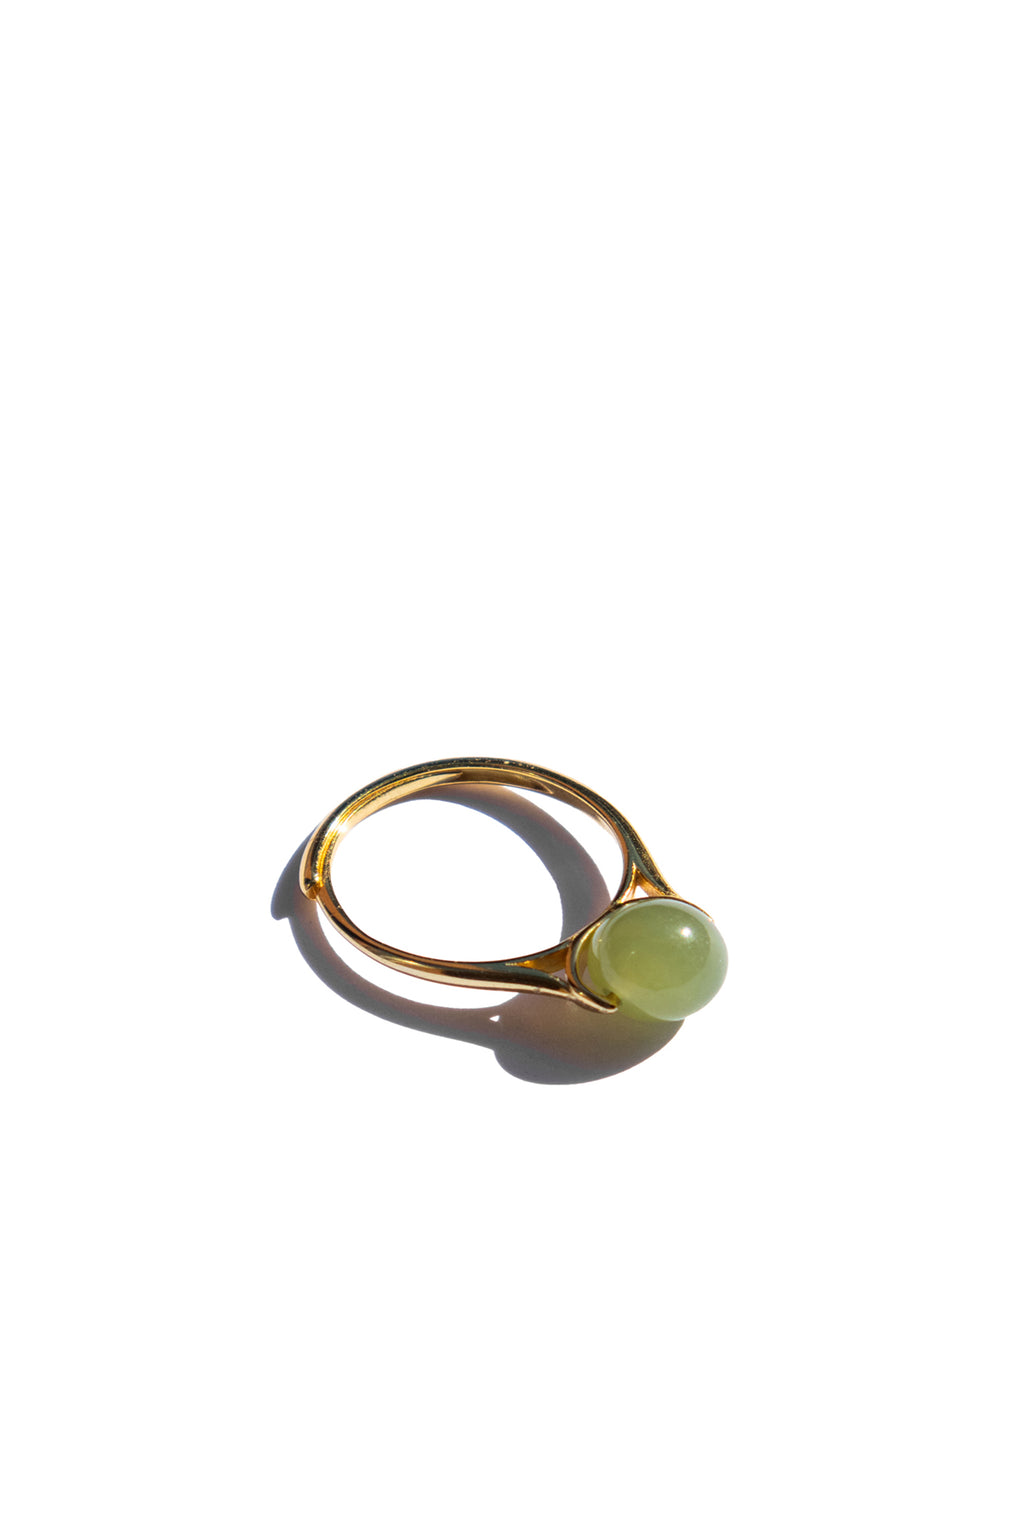 seree-Equinox-Green-bead-jade-ring-1